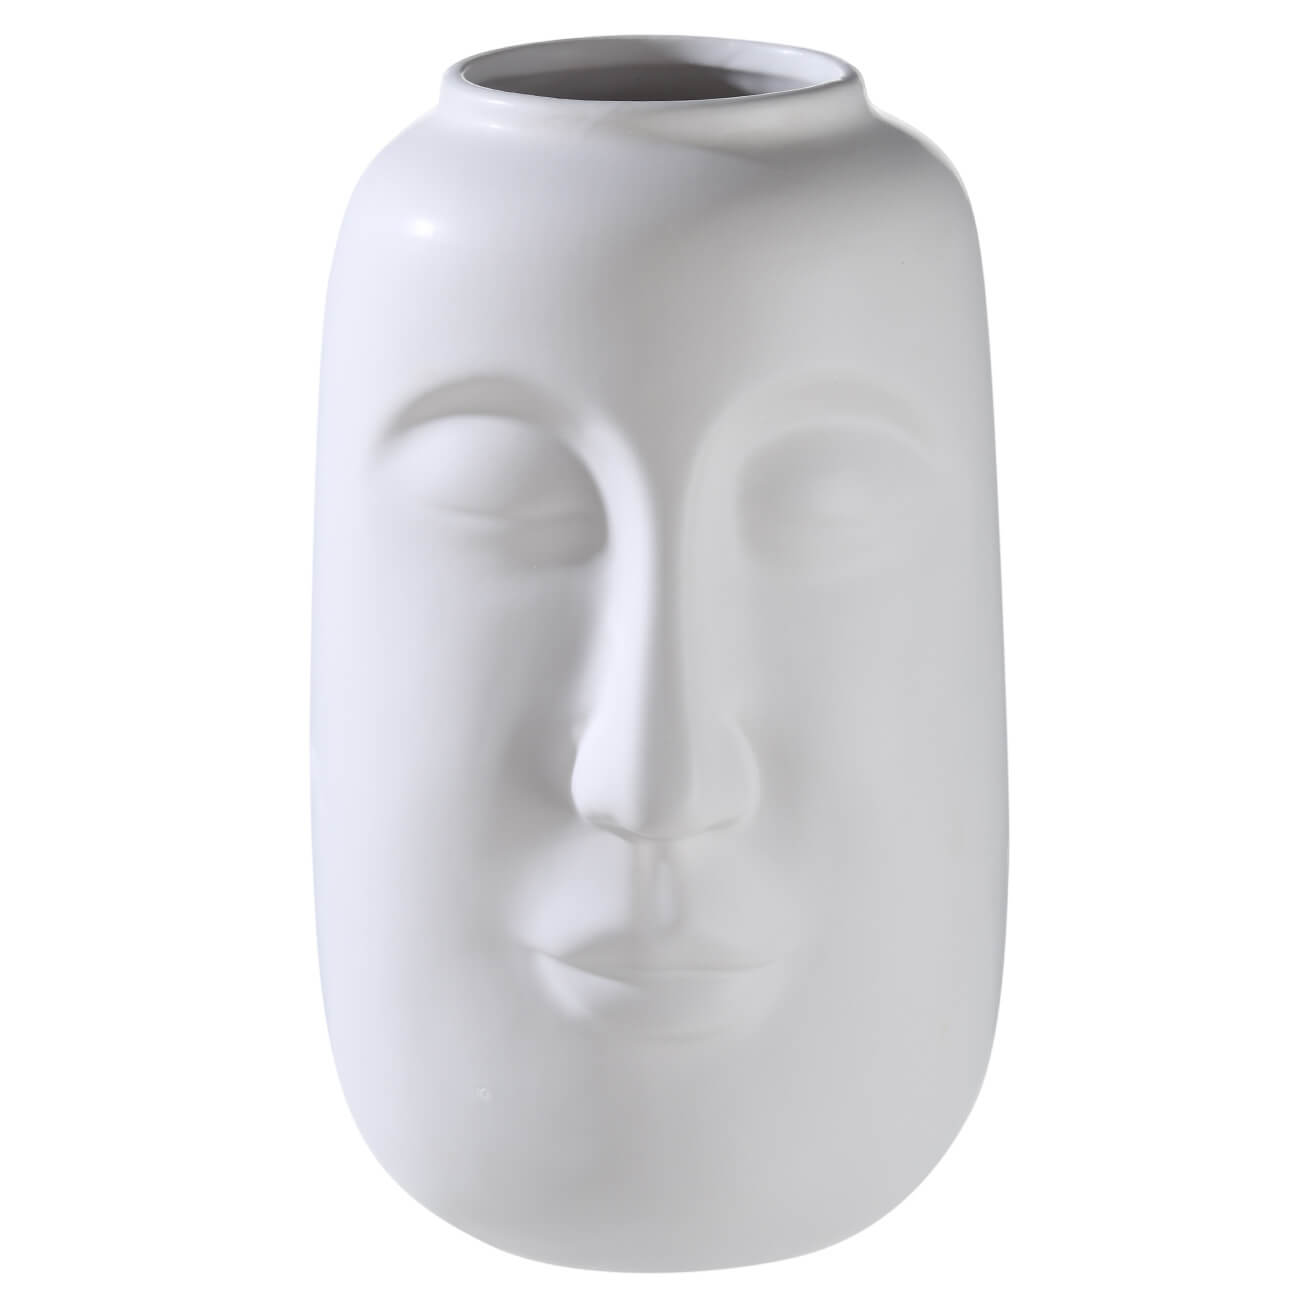 Ваза для цветов, 26 см, декоративная, керамика, белая, Лицо, Face ваза для сухо ов керамика настольная 20 см корнелия y4 6558 белая